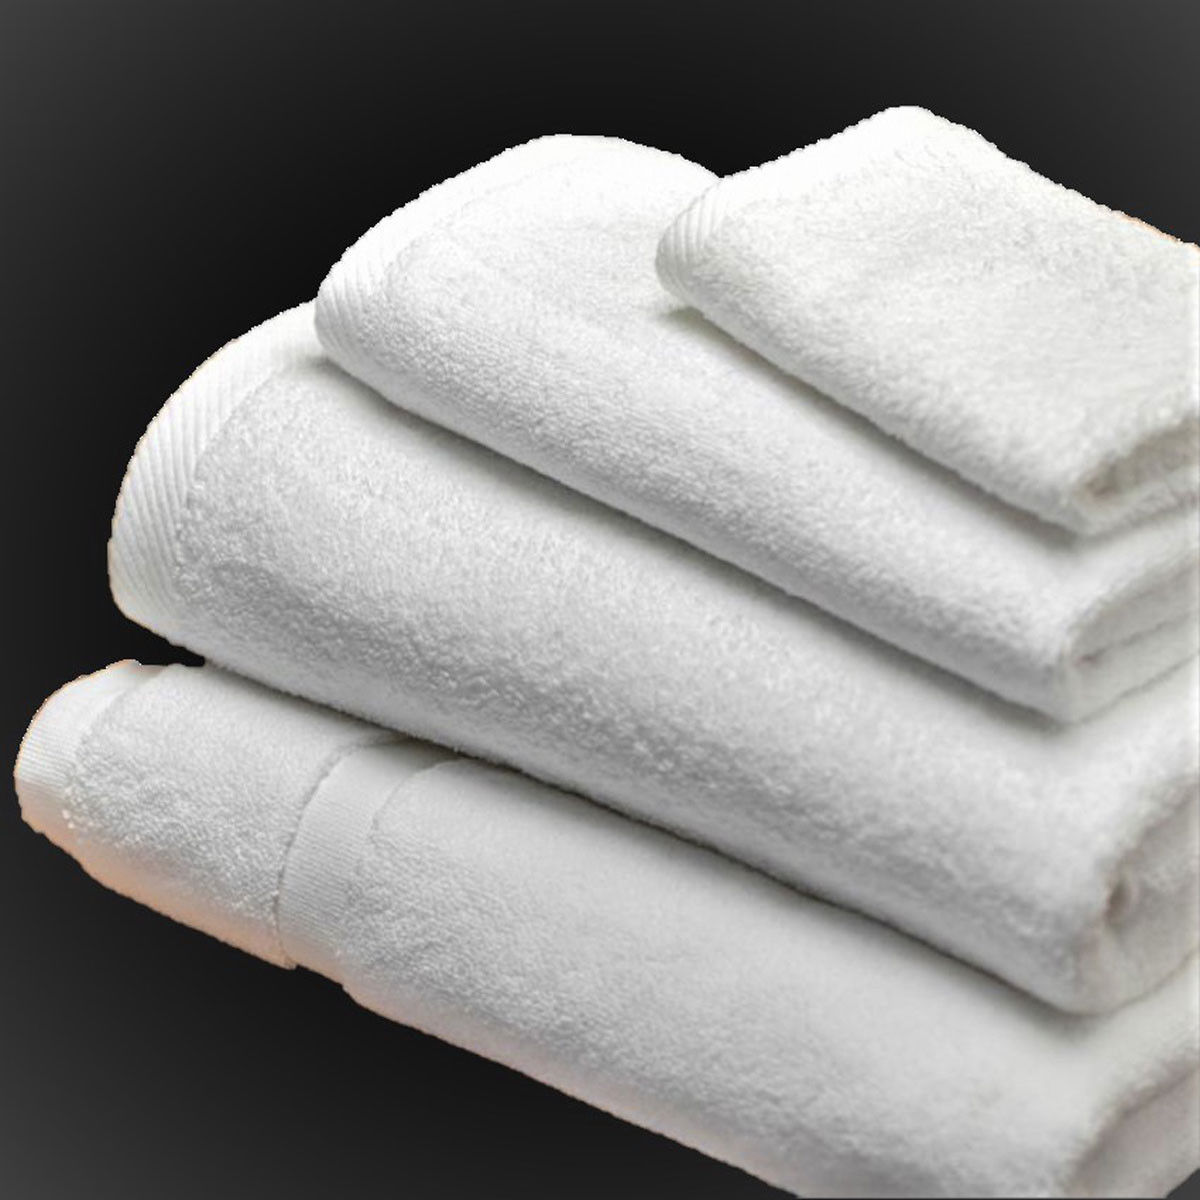 Does the bulk bath towels wholesale have any unique design features?